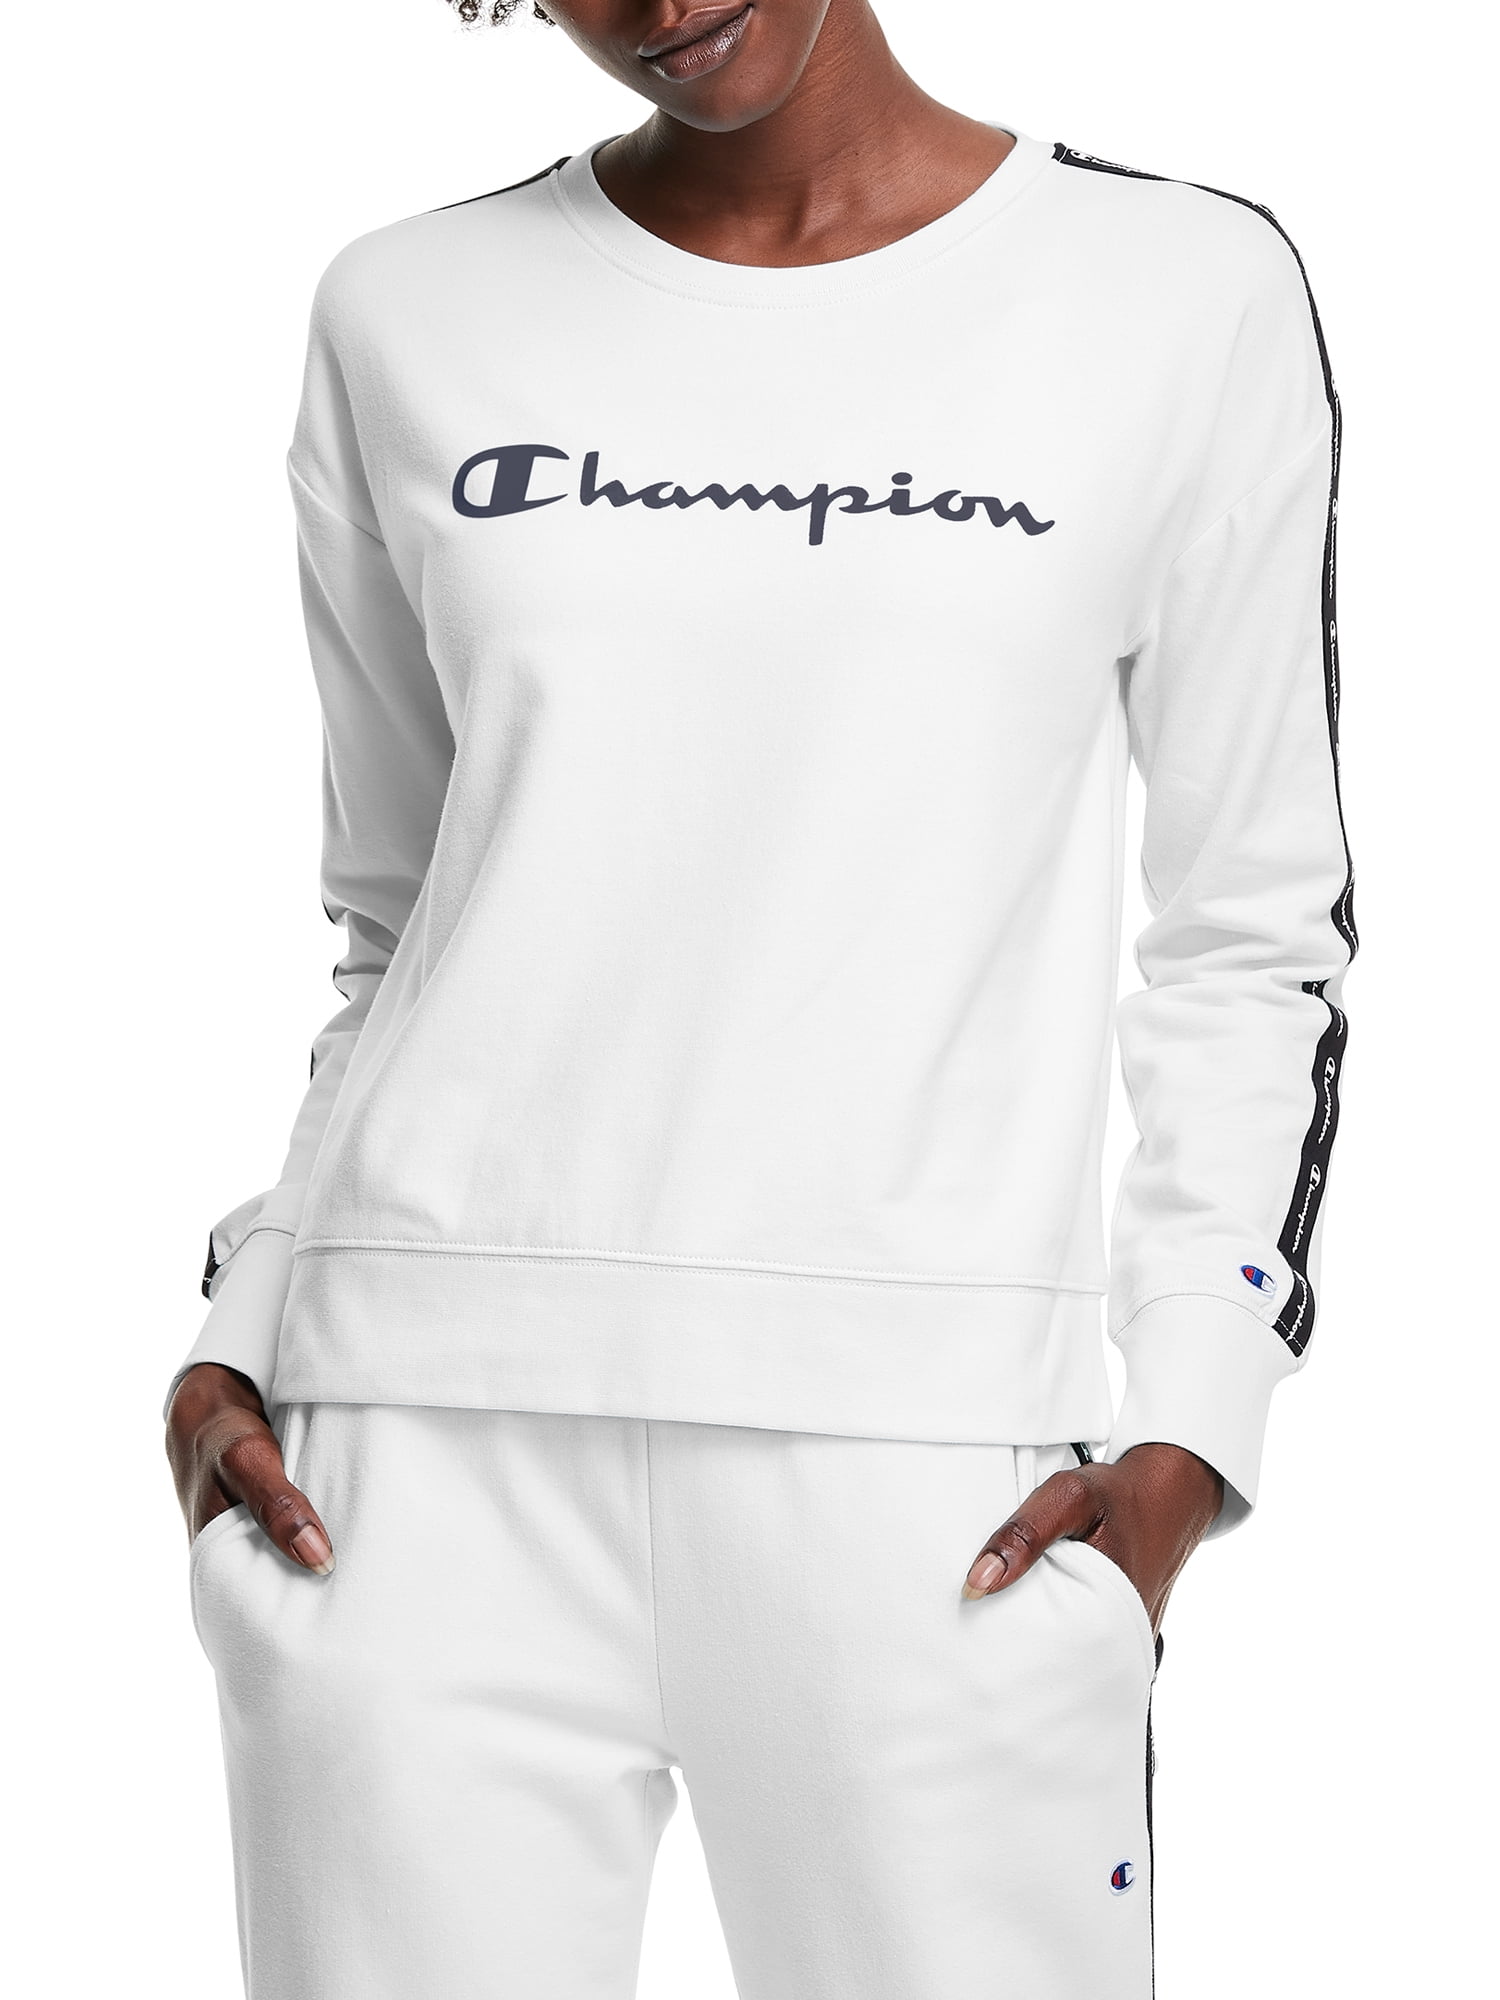 NEW MED Champion Womens light-blue LIGHTWEIGHT thin Long Sleeve T-shirt Hoodie